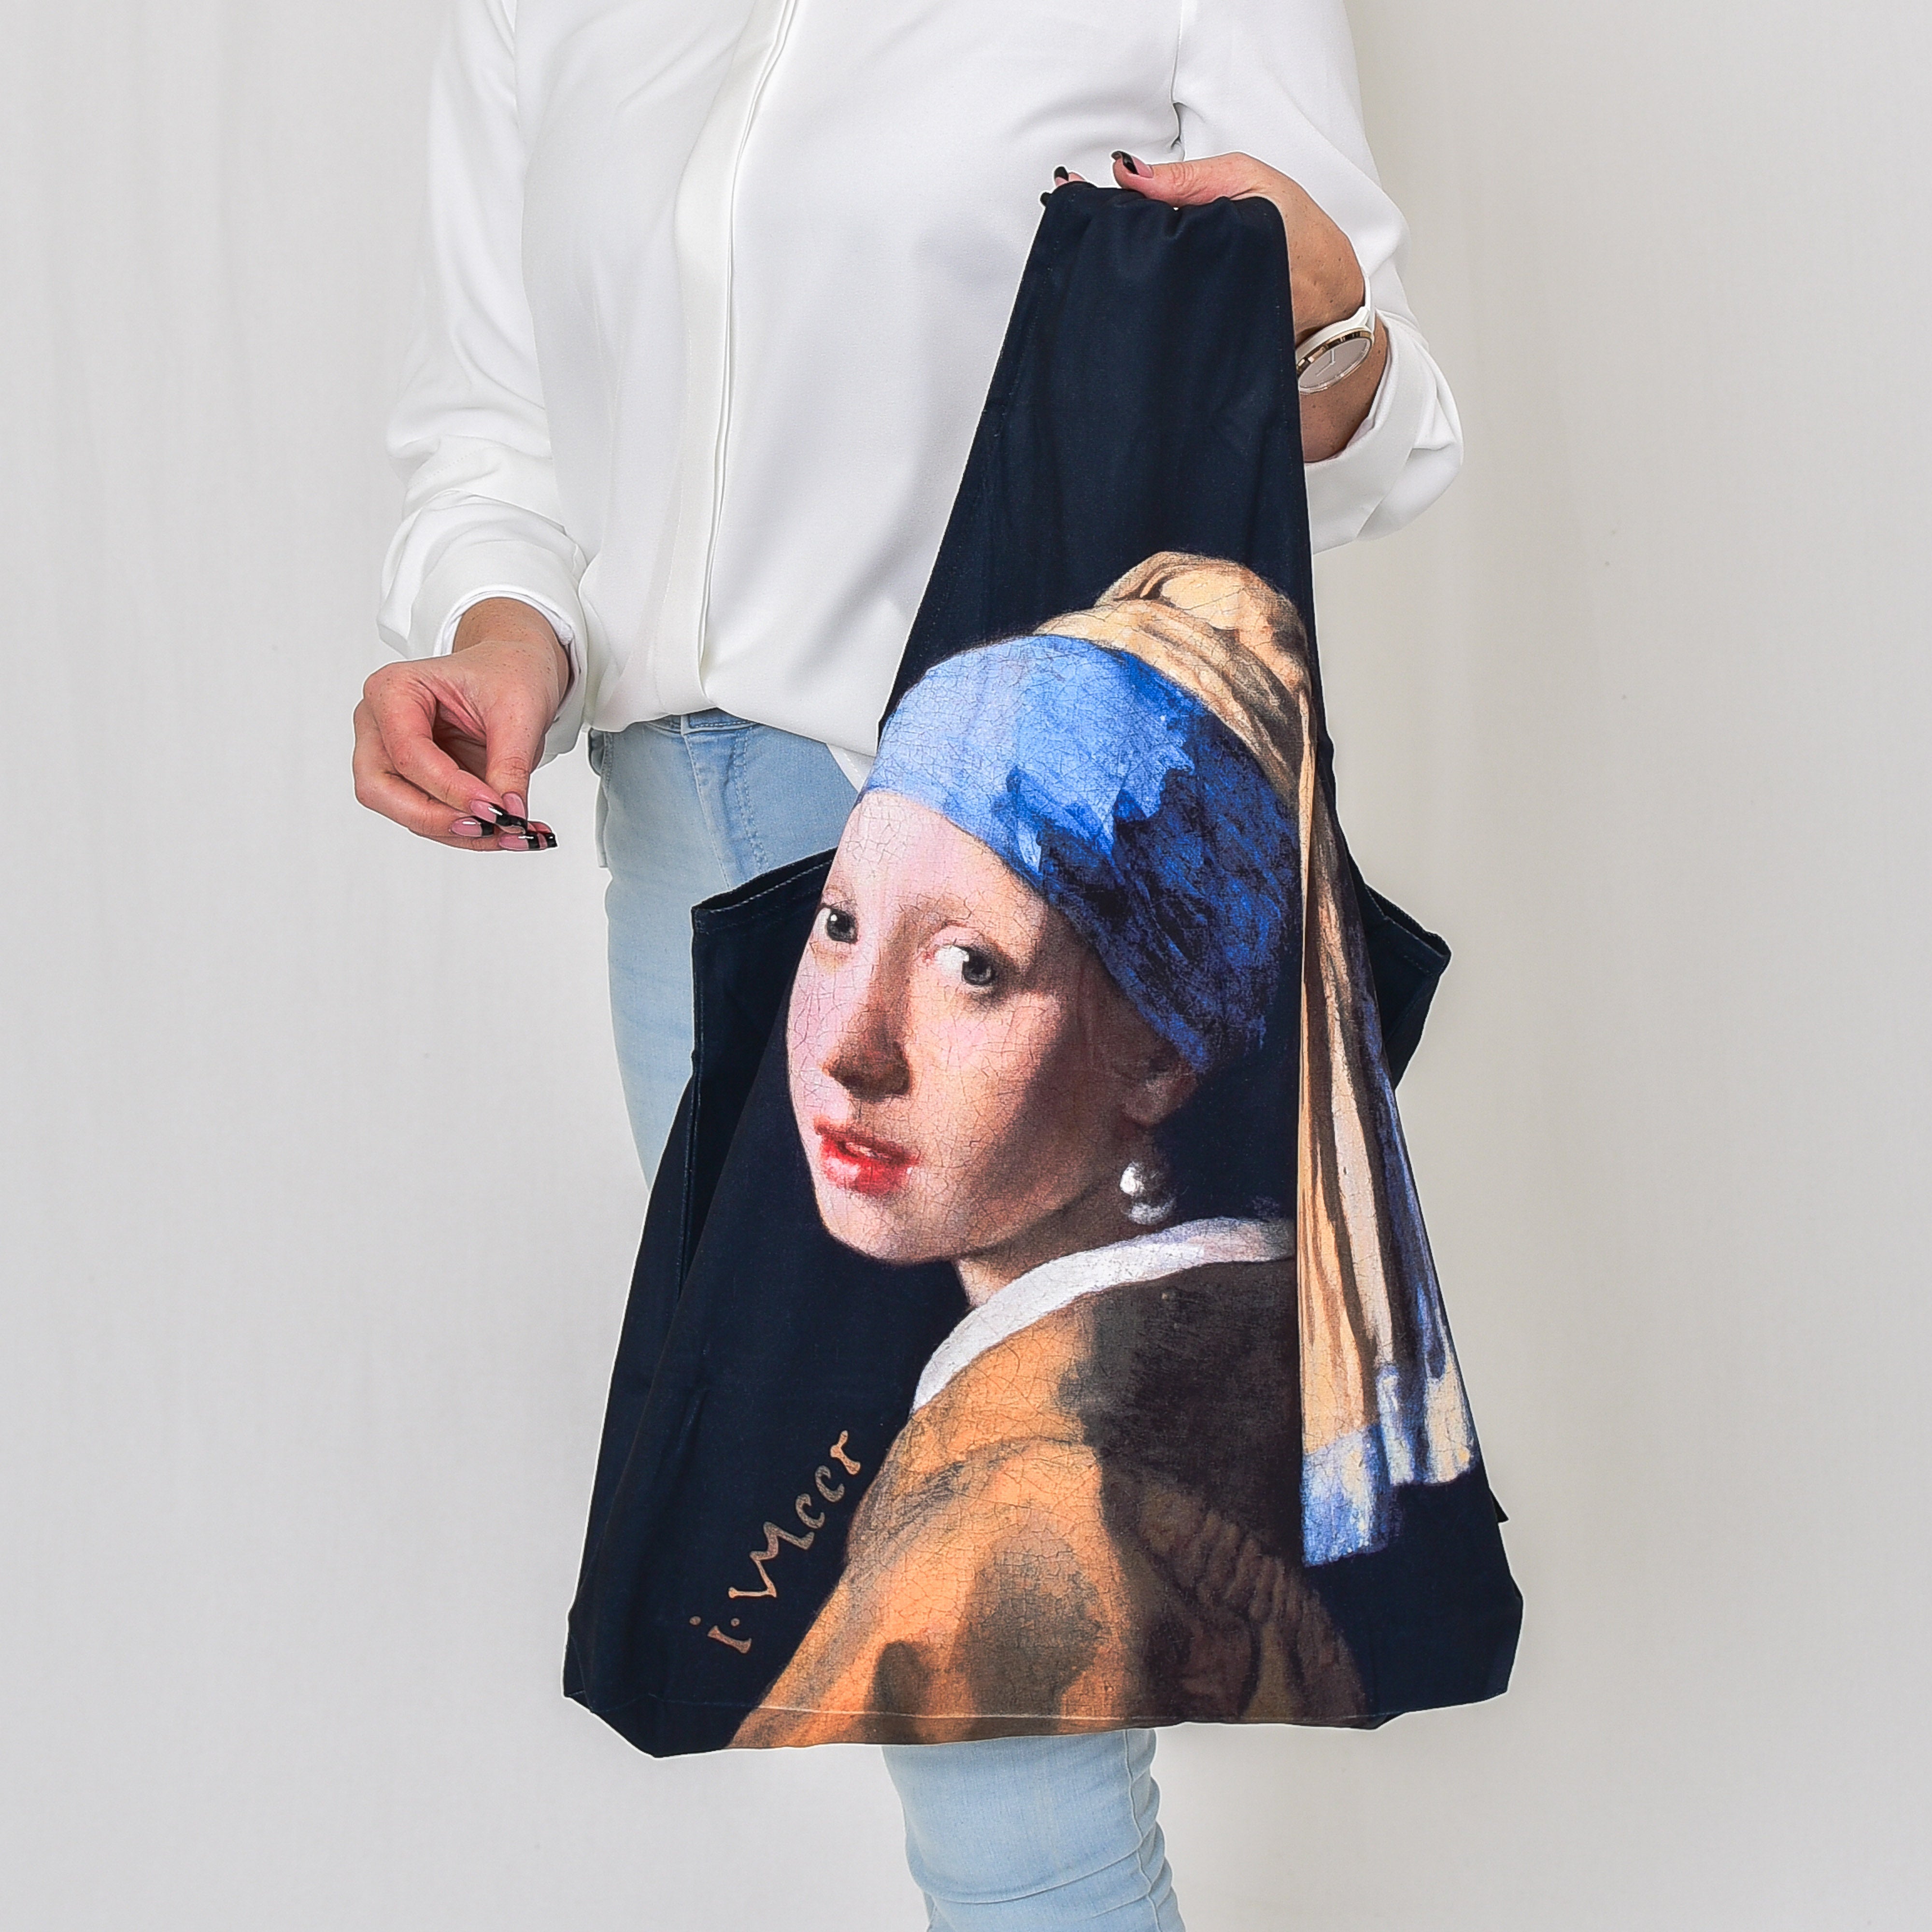 Gegužinis krepšys Johannes Vermeer "Girl with a Pearl Earring"